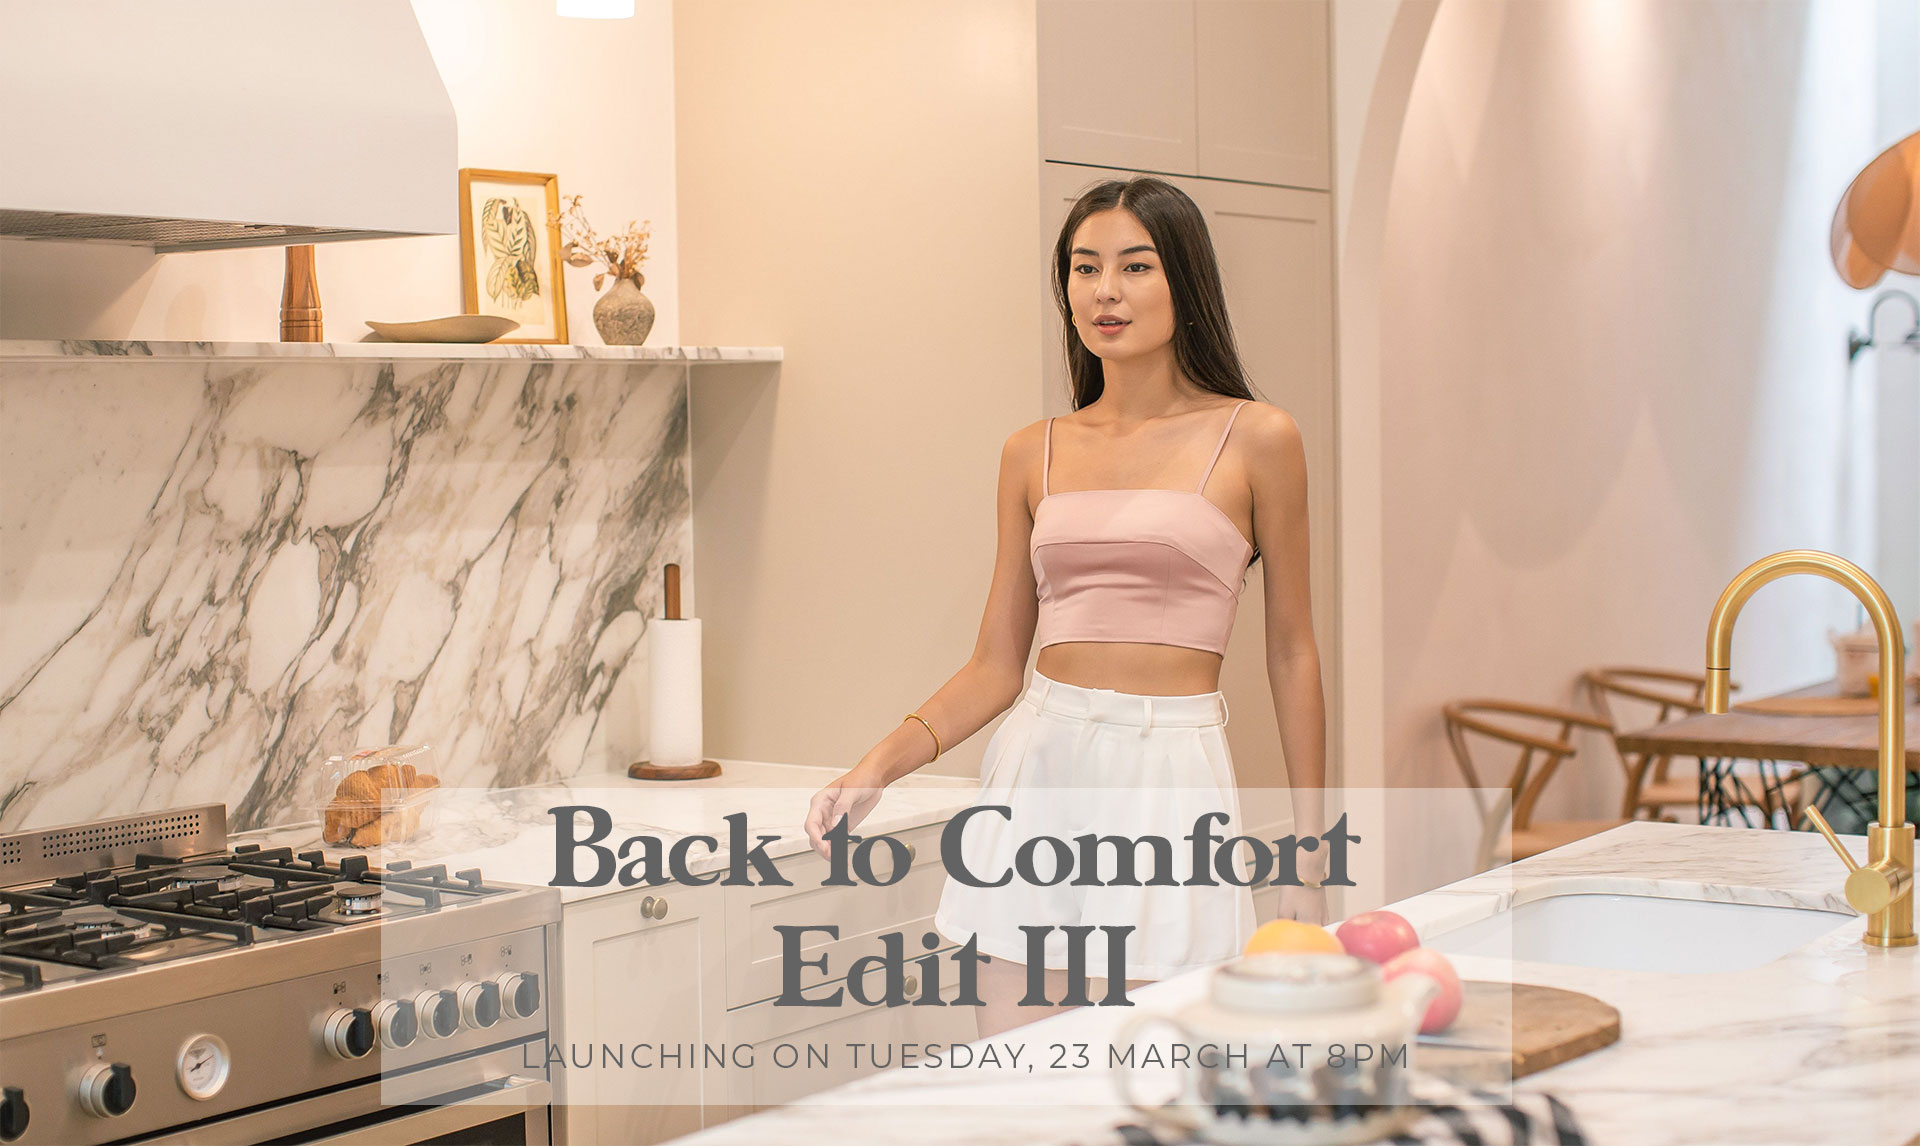 Back to Comfort: Edit III